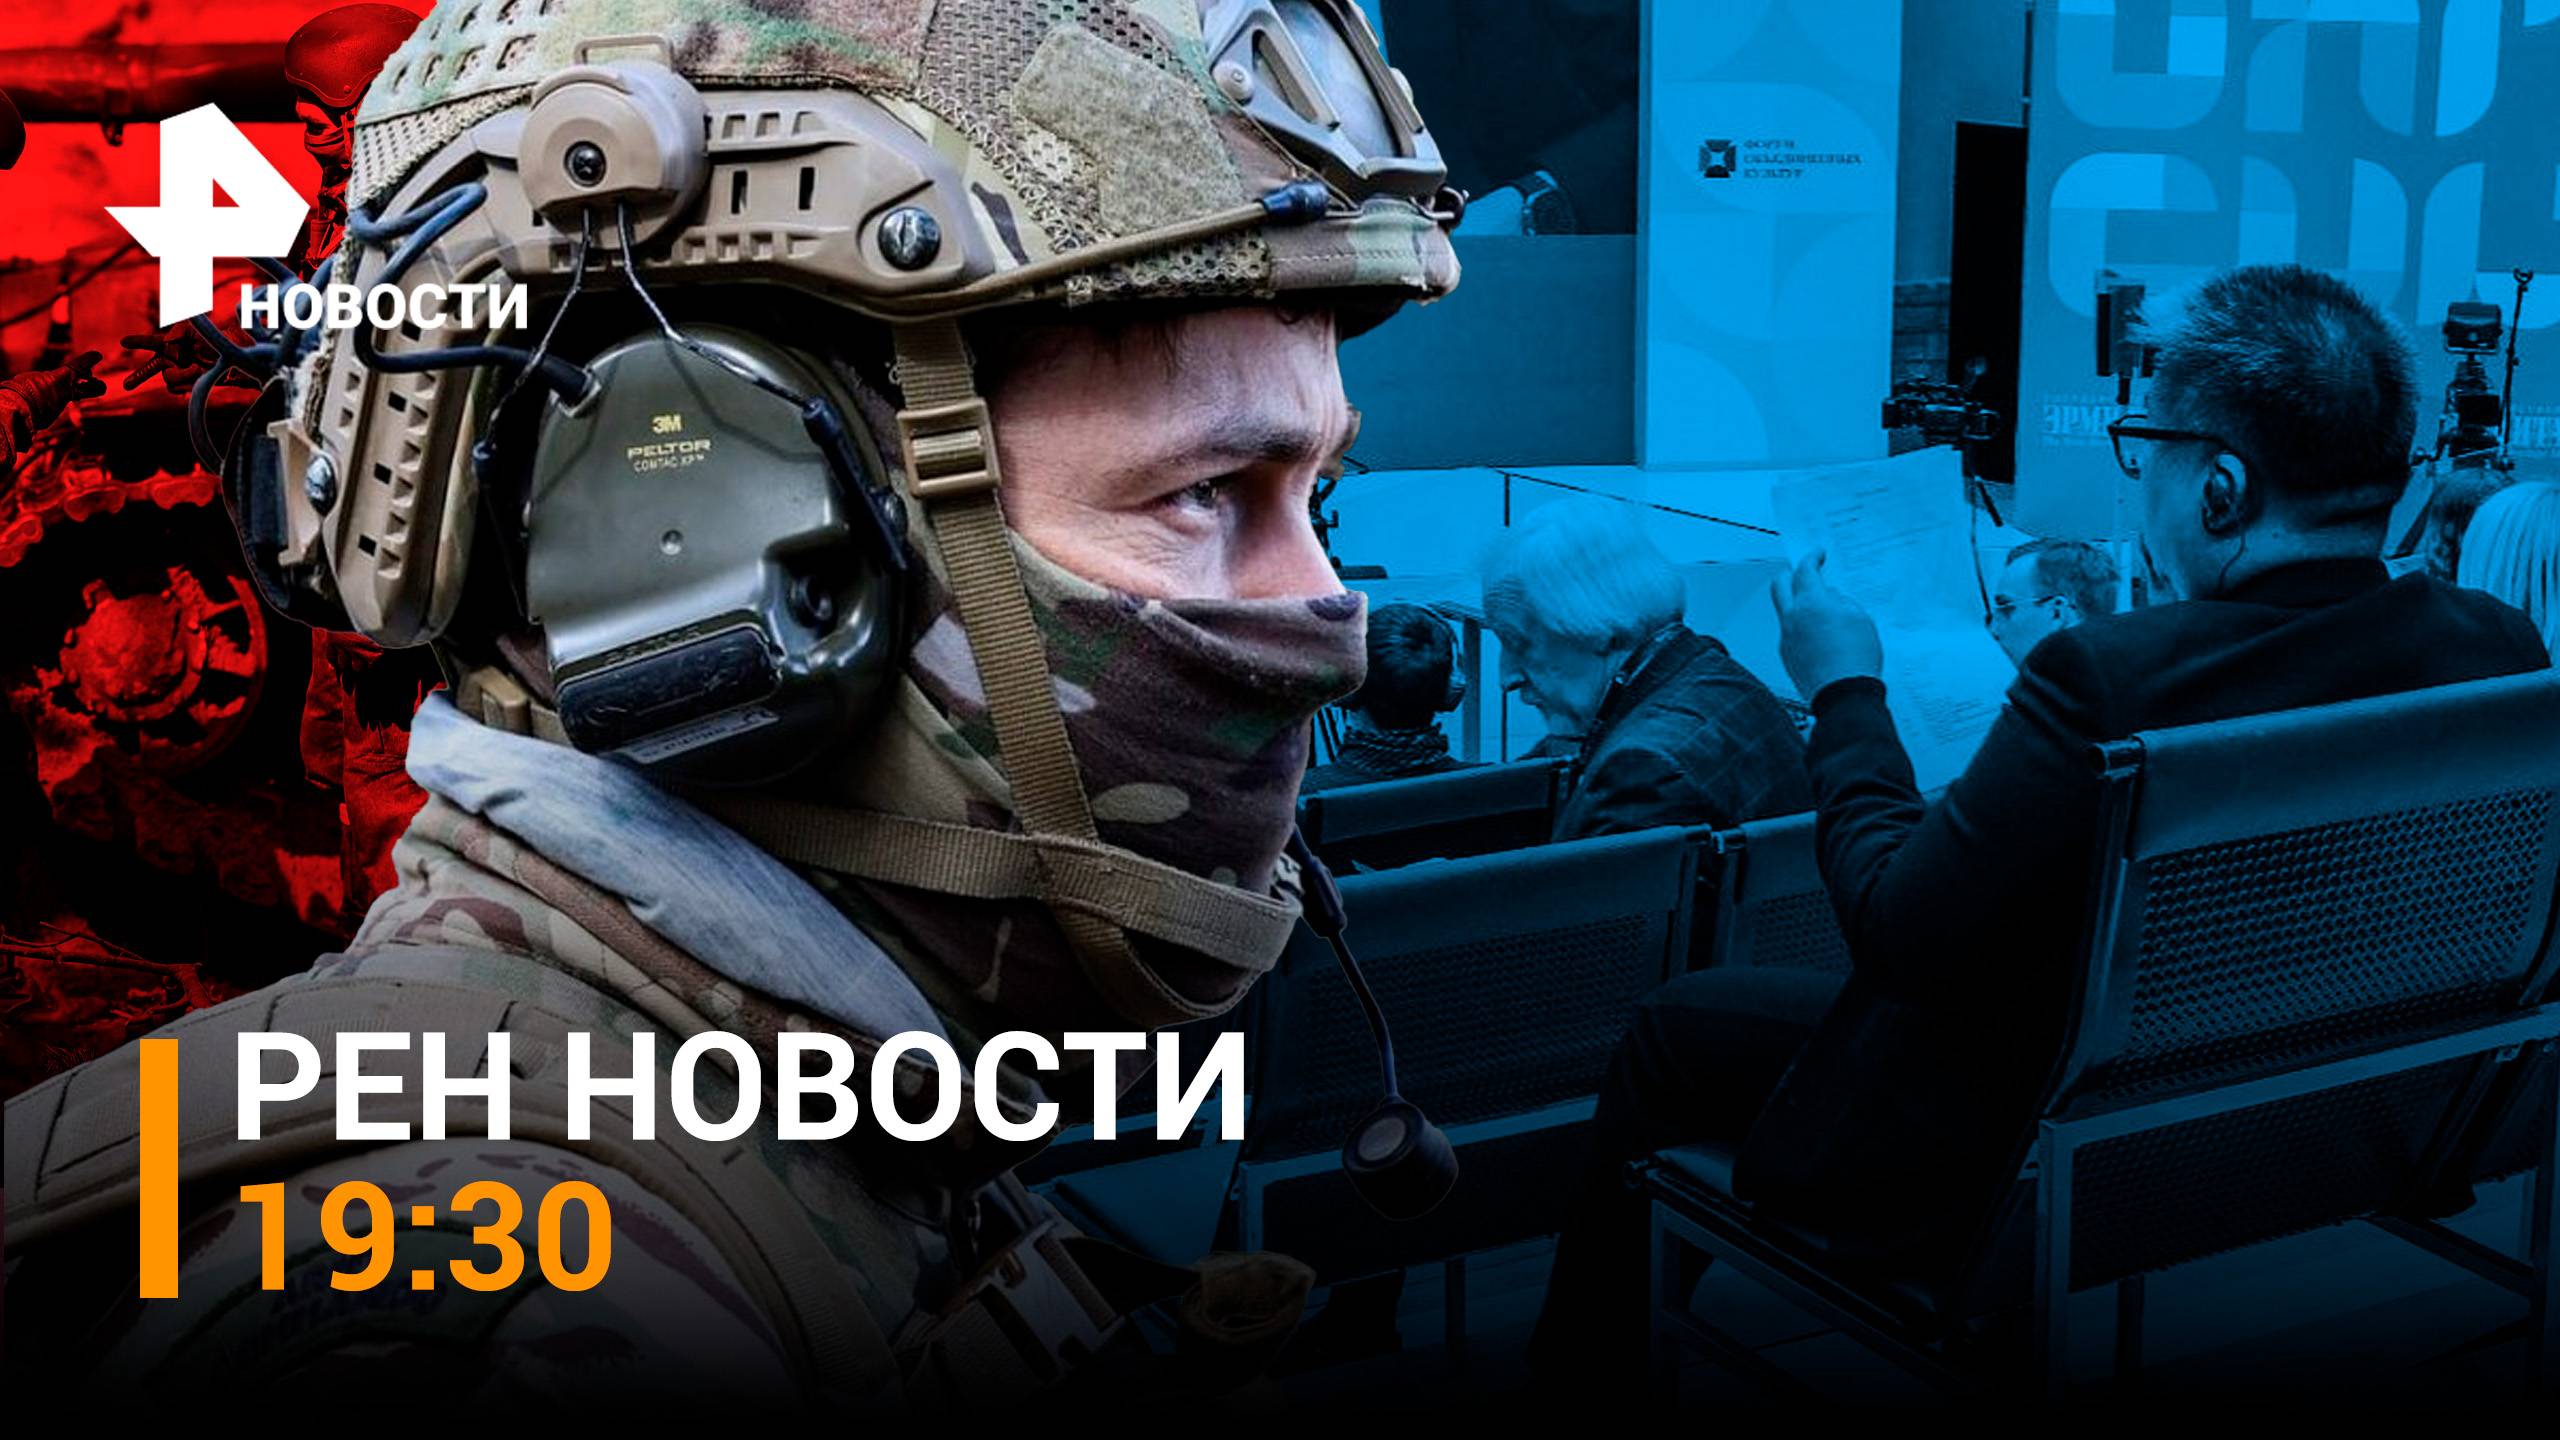 Танк в одиночку штурмует Авдеевку - спас машину от дрона ВСУ / РЕН НОВОСТИ 19:30, 17.11.23